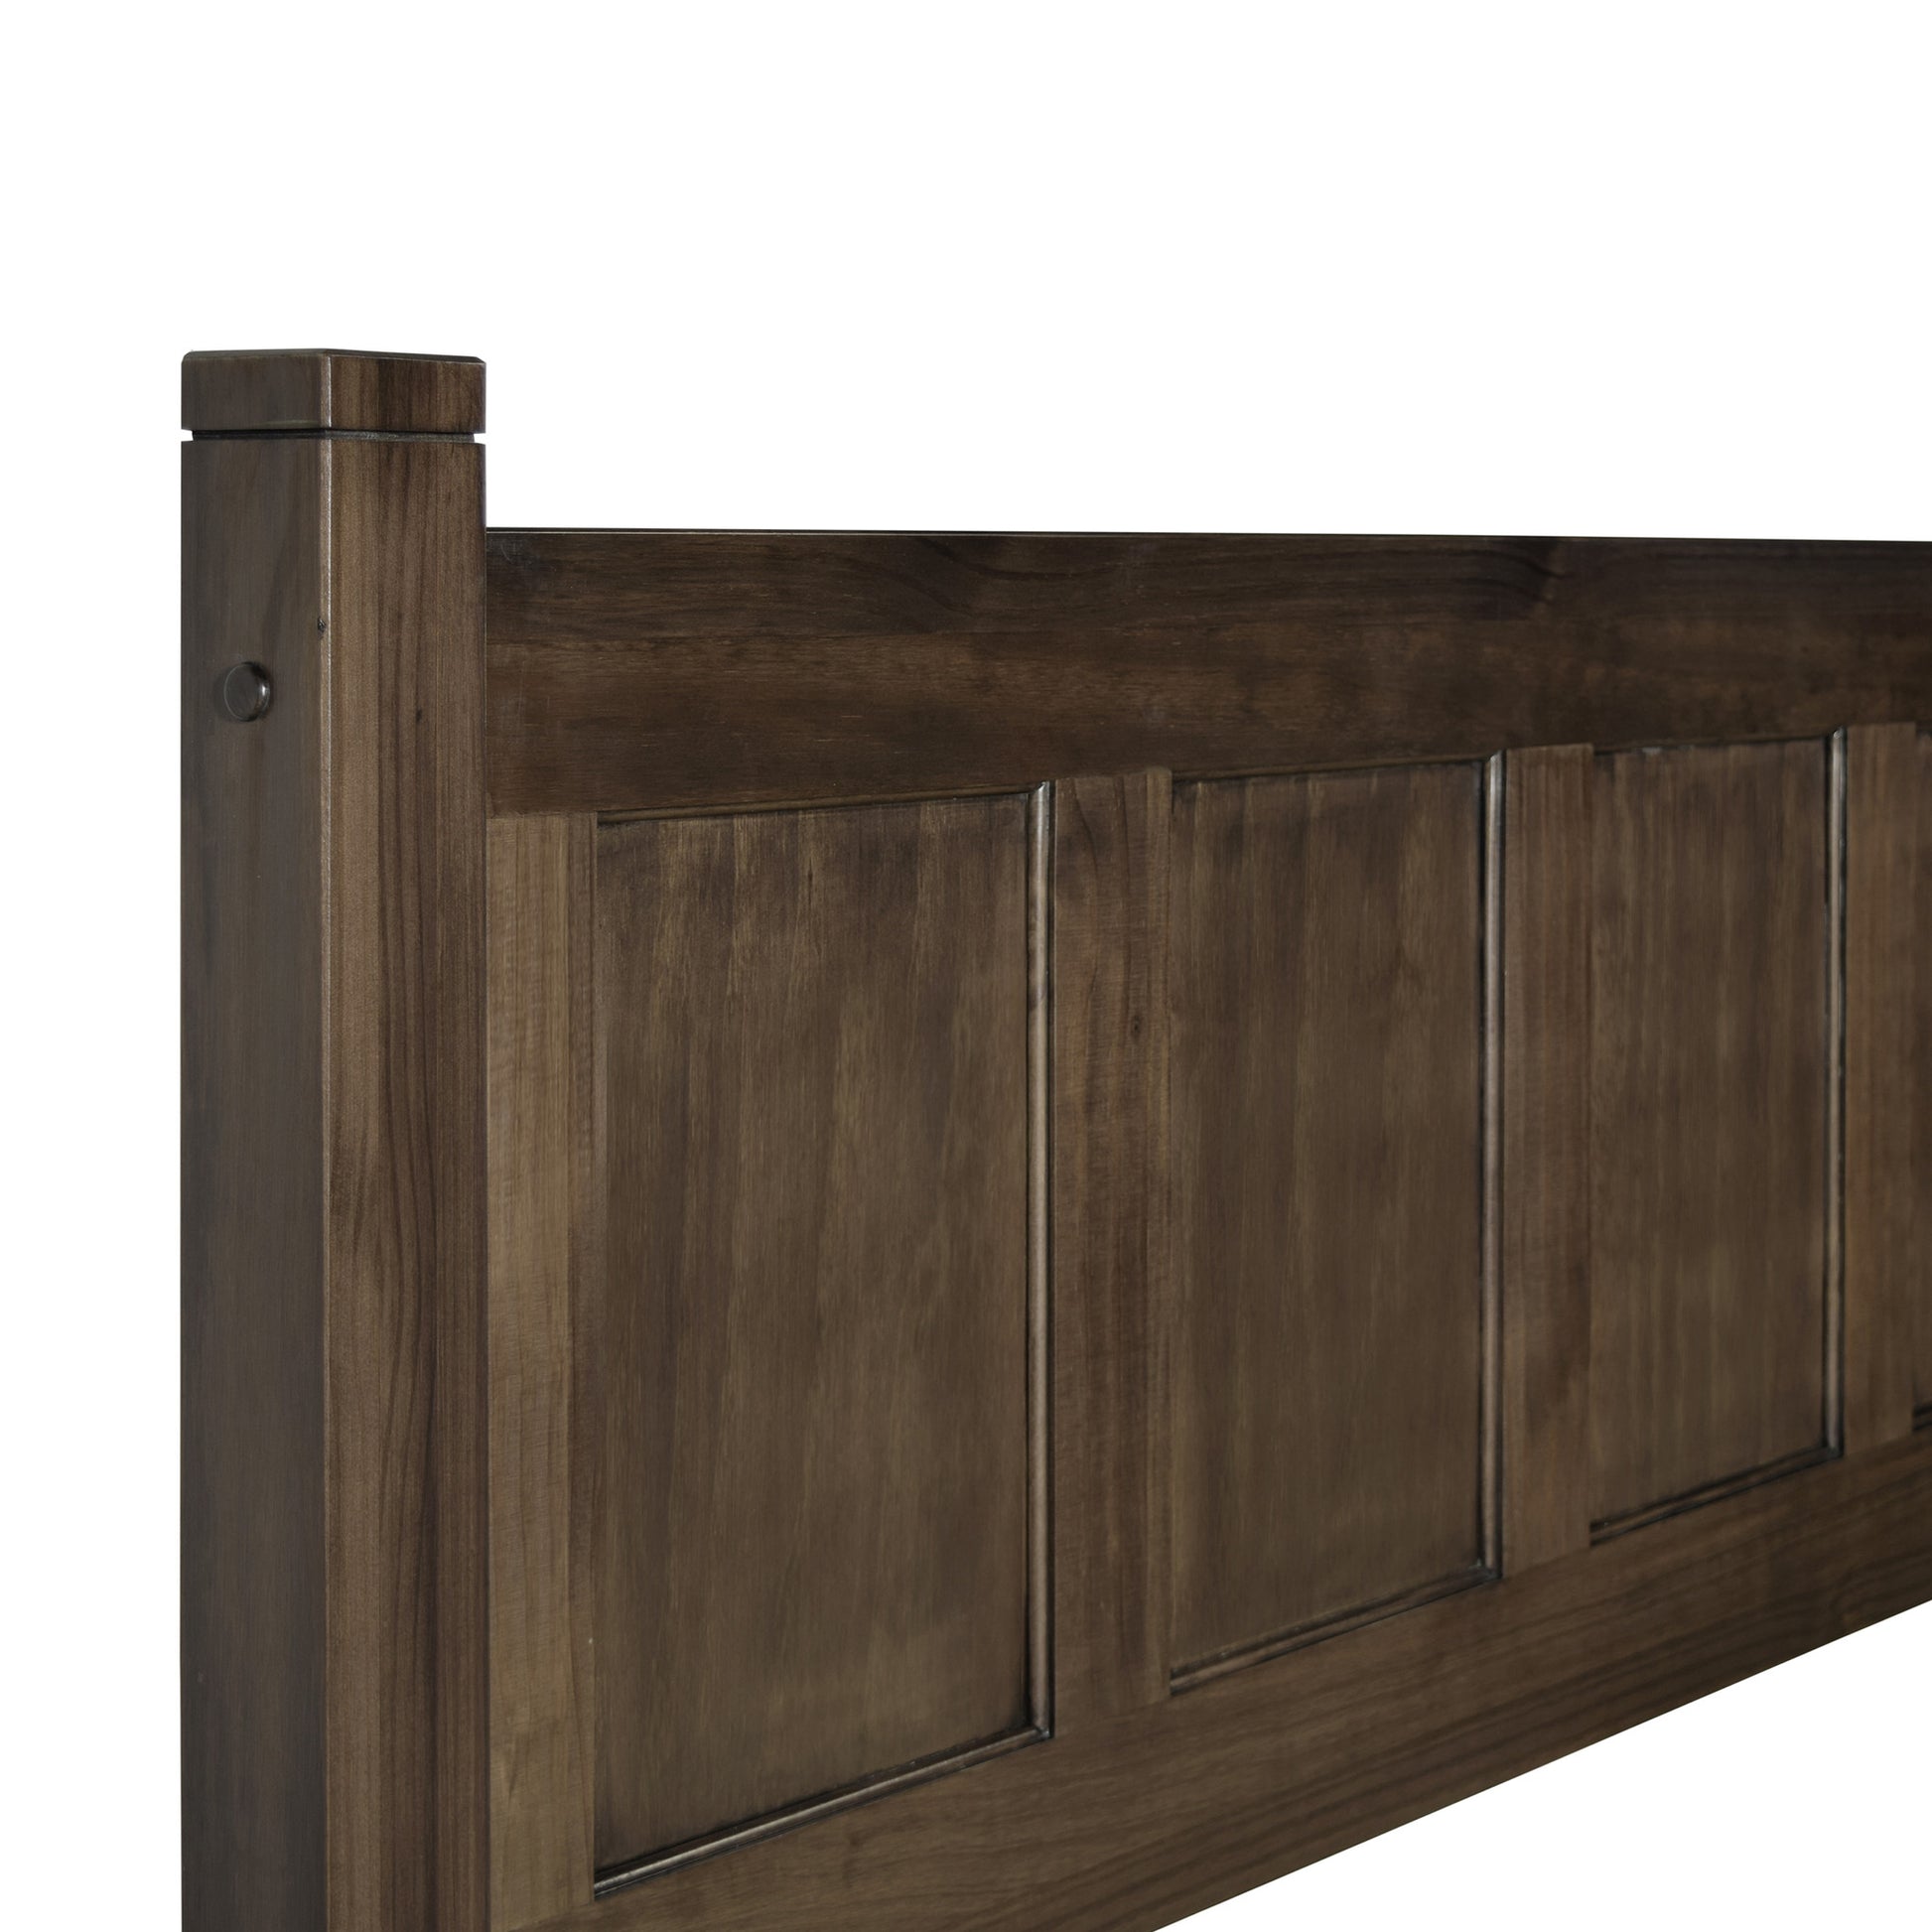 Shaker Queen Panel Platform Bed -  - Grain Wood Furniture - 10